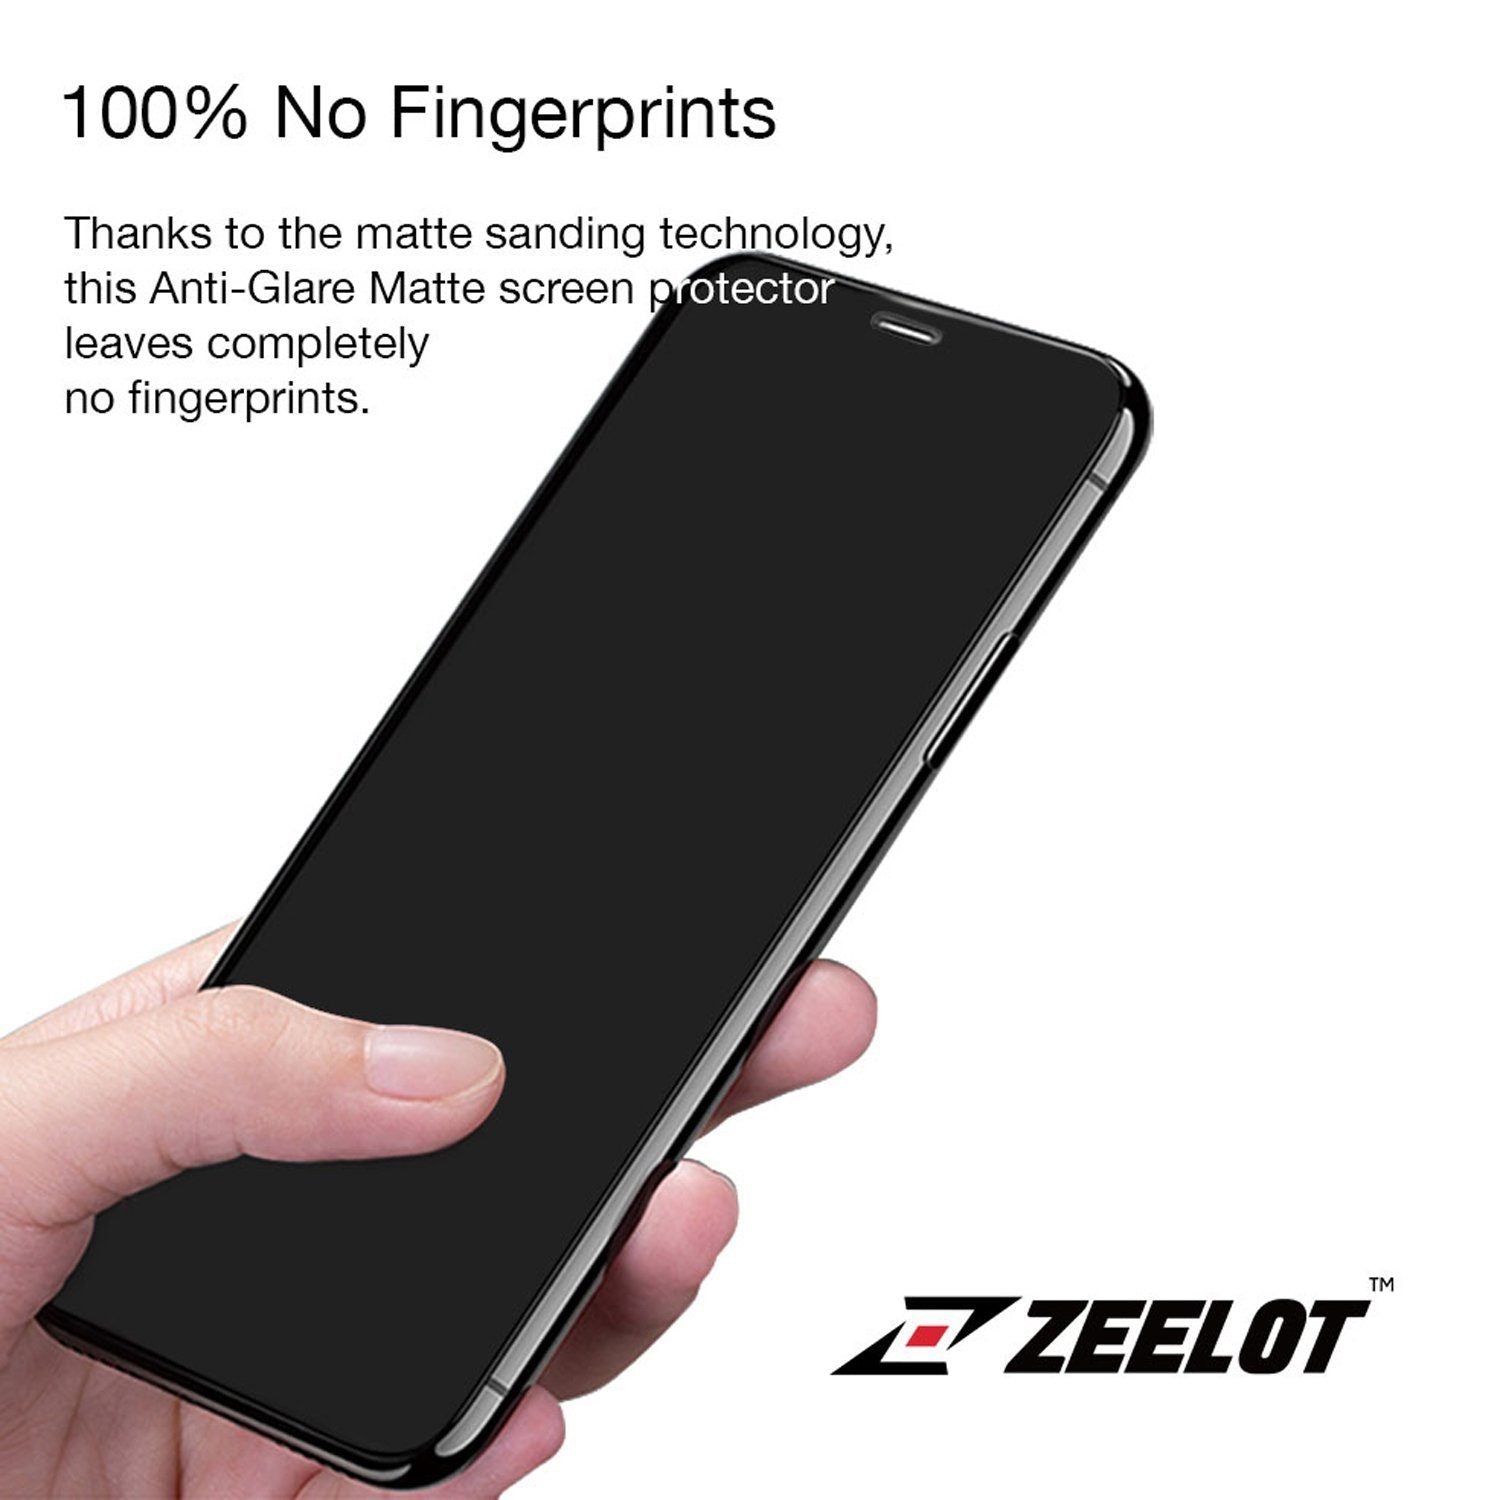 ZEELOT PureGlass 2.5D Tempered Glass Screen Protector for Google Pixel 4 XL, Clear Tempered Glass ZEELOT 